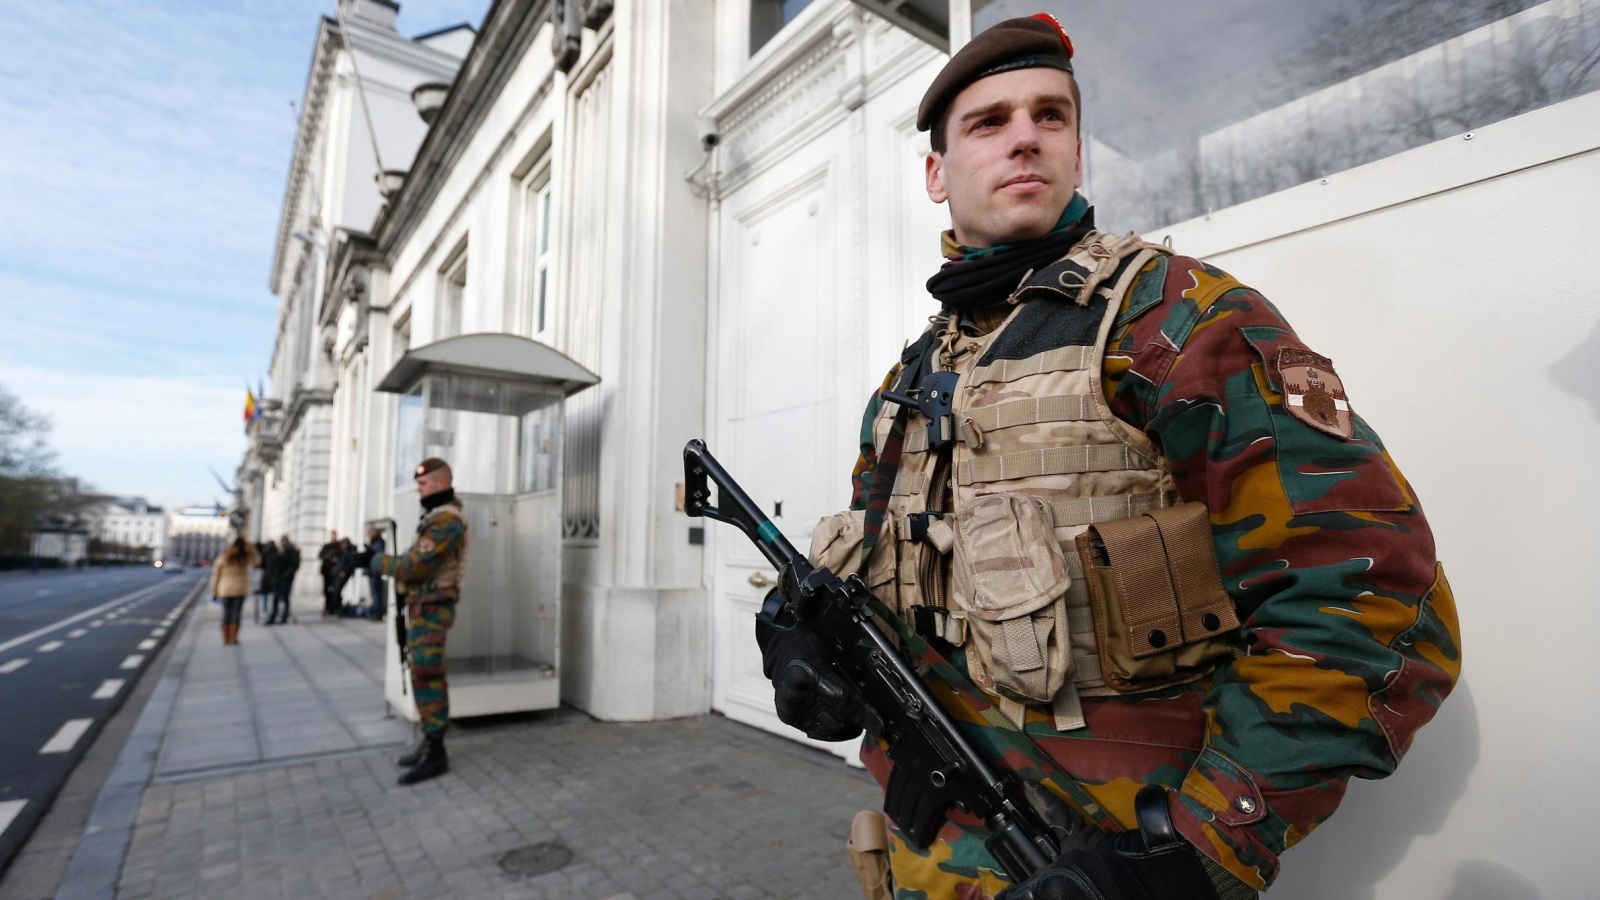  حالة التأهب تتواصل في بلجيكا وسط مخاوف من هجمات (الأوروبية)